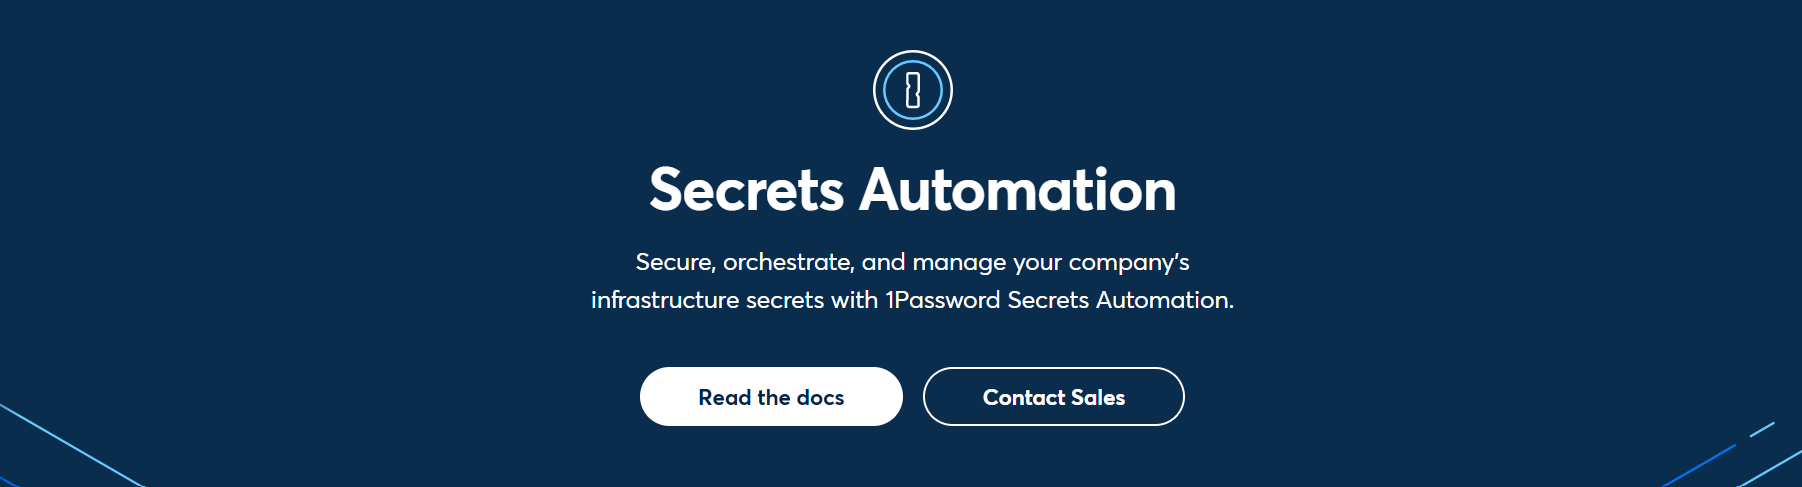 1Password Secrets Automation